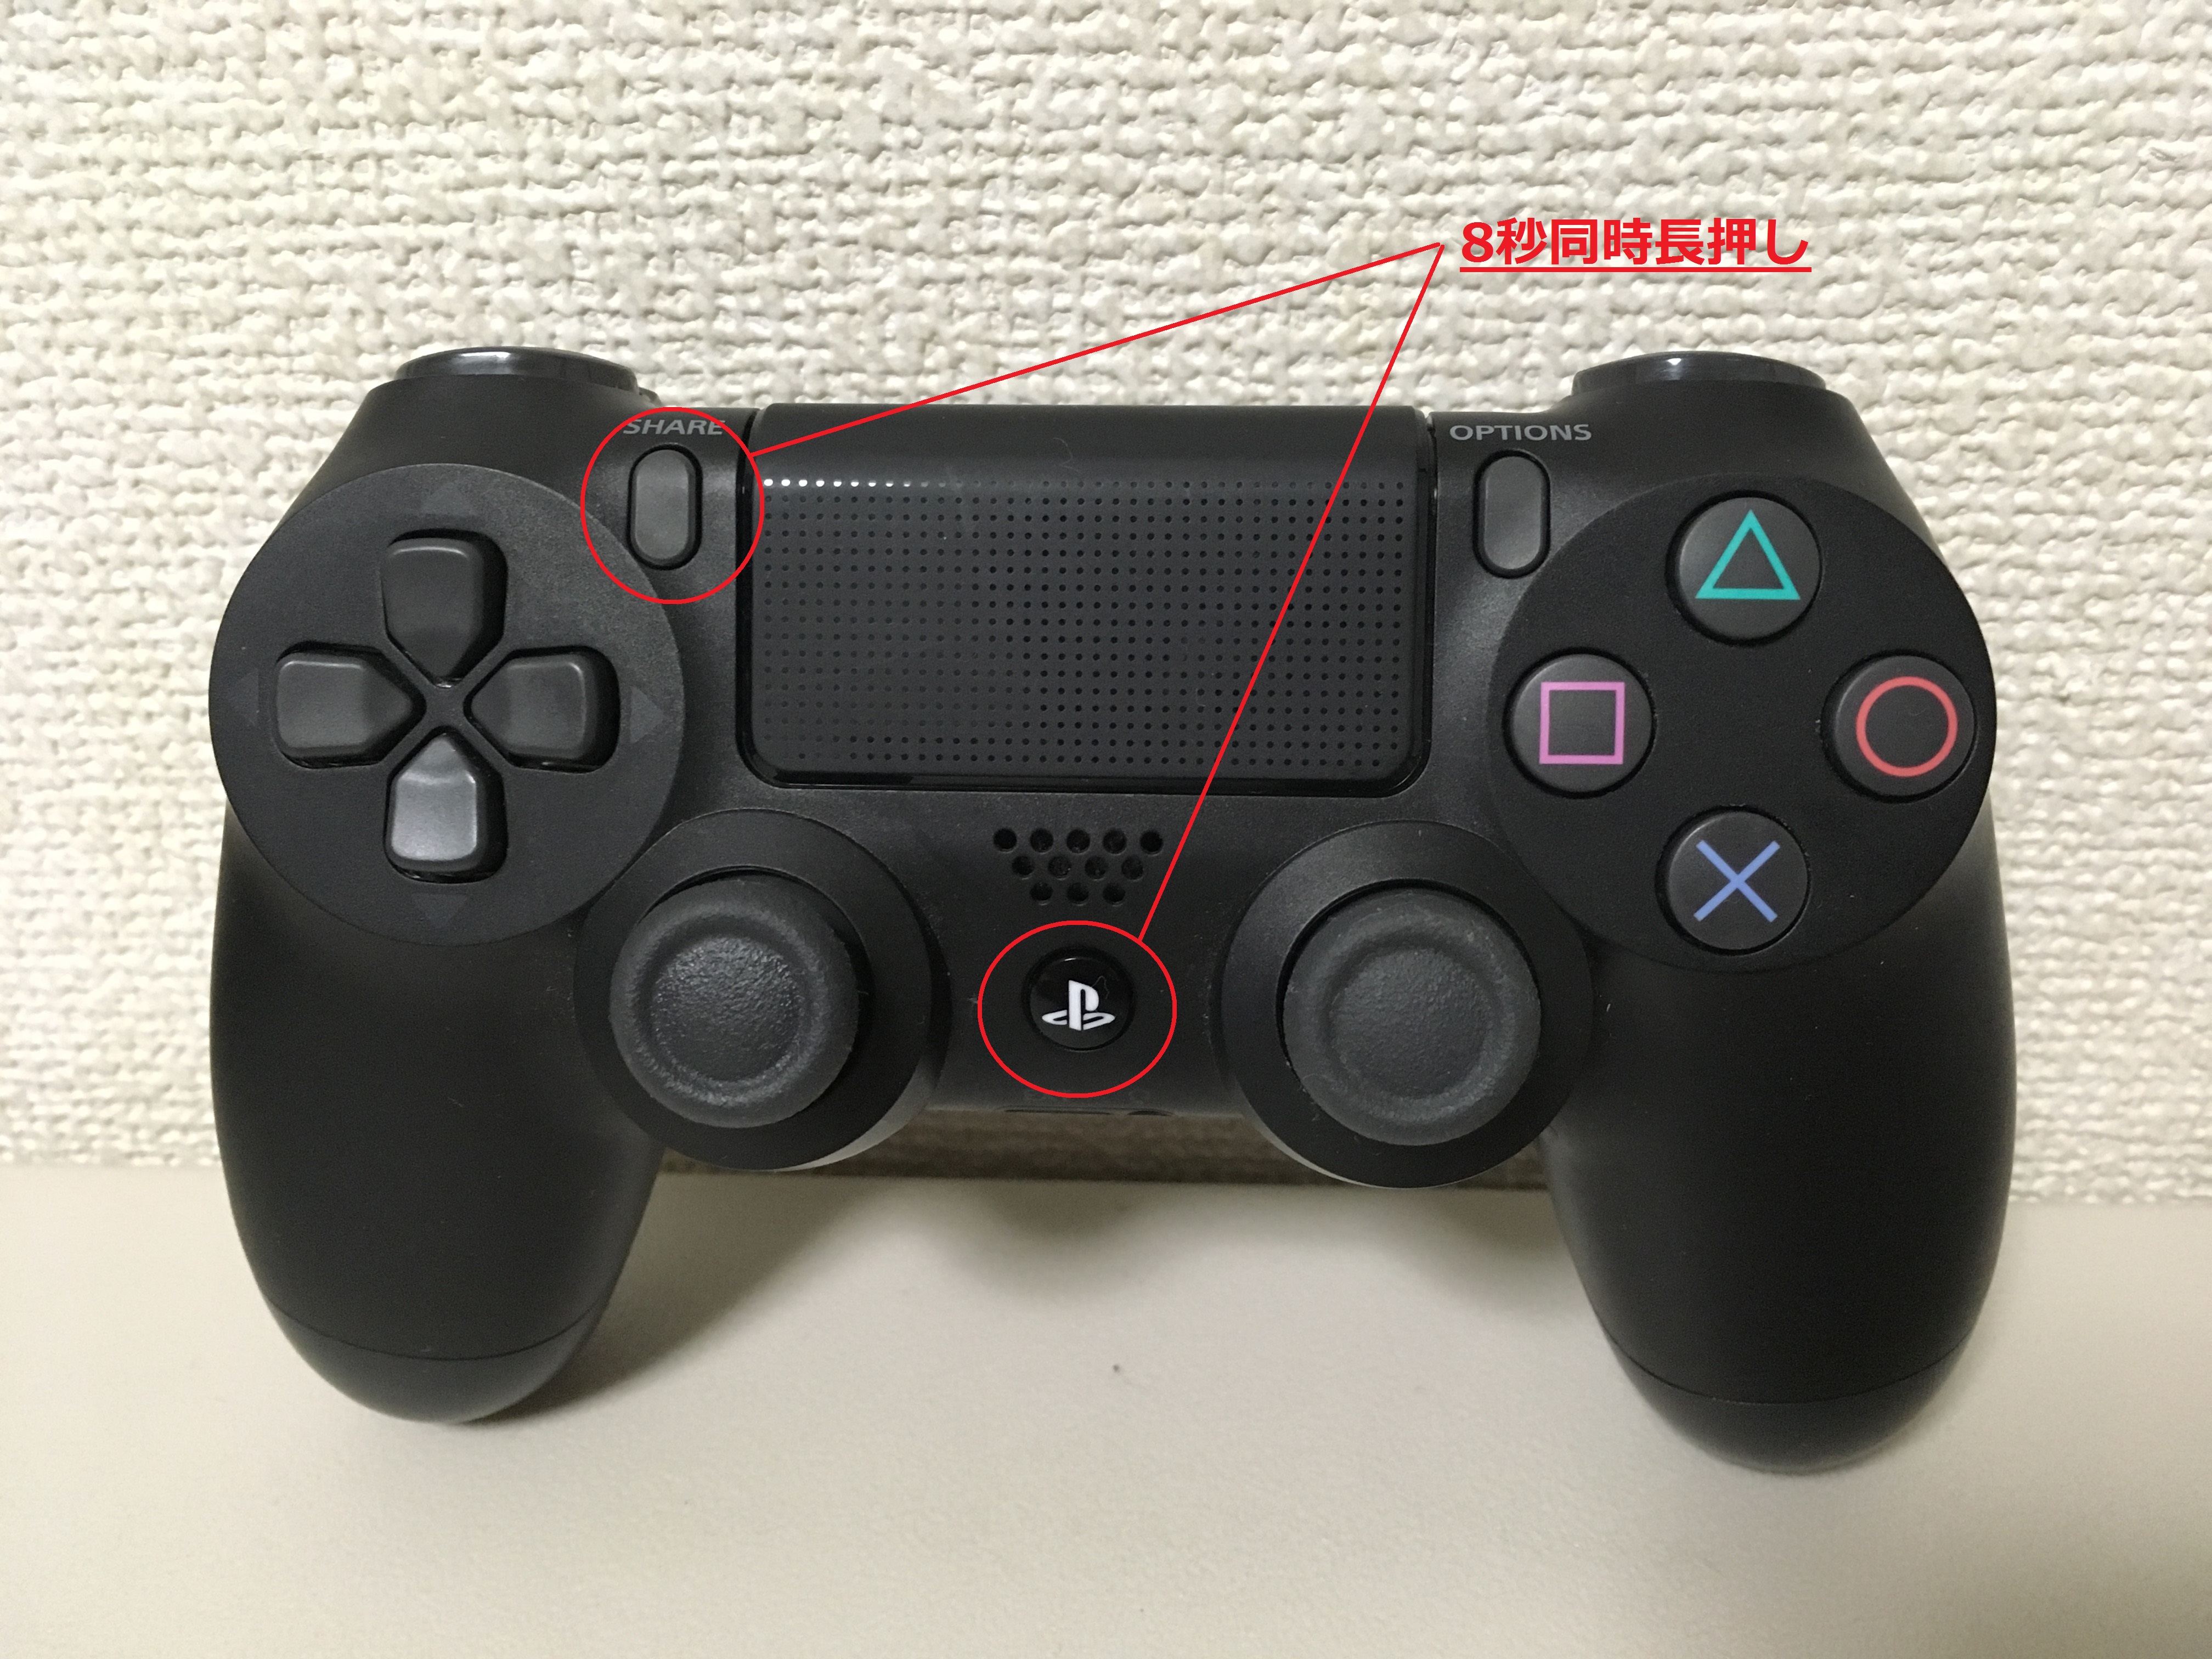 PS4(プレステ4)のコントローラーを接続・解除する方法。2台以上繋げる場合は？ | れとろとろ ゲームブログ